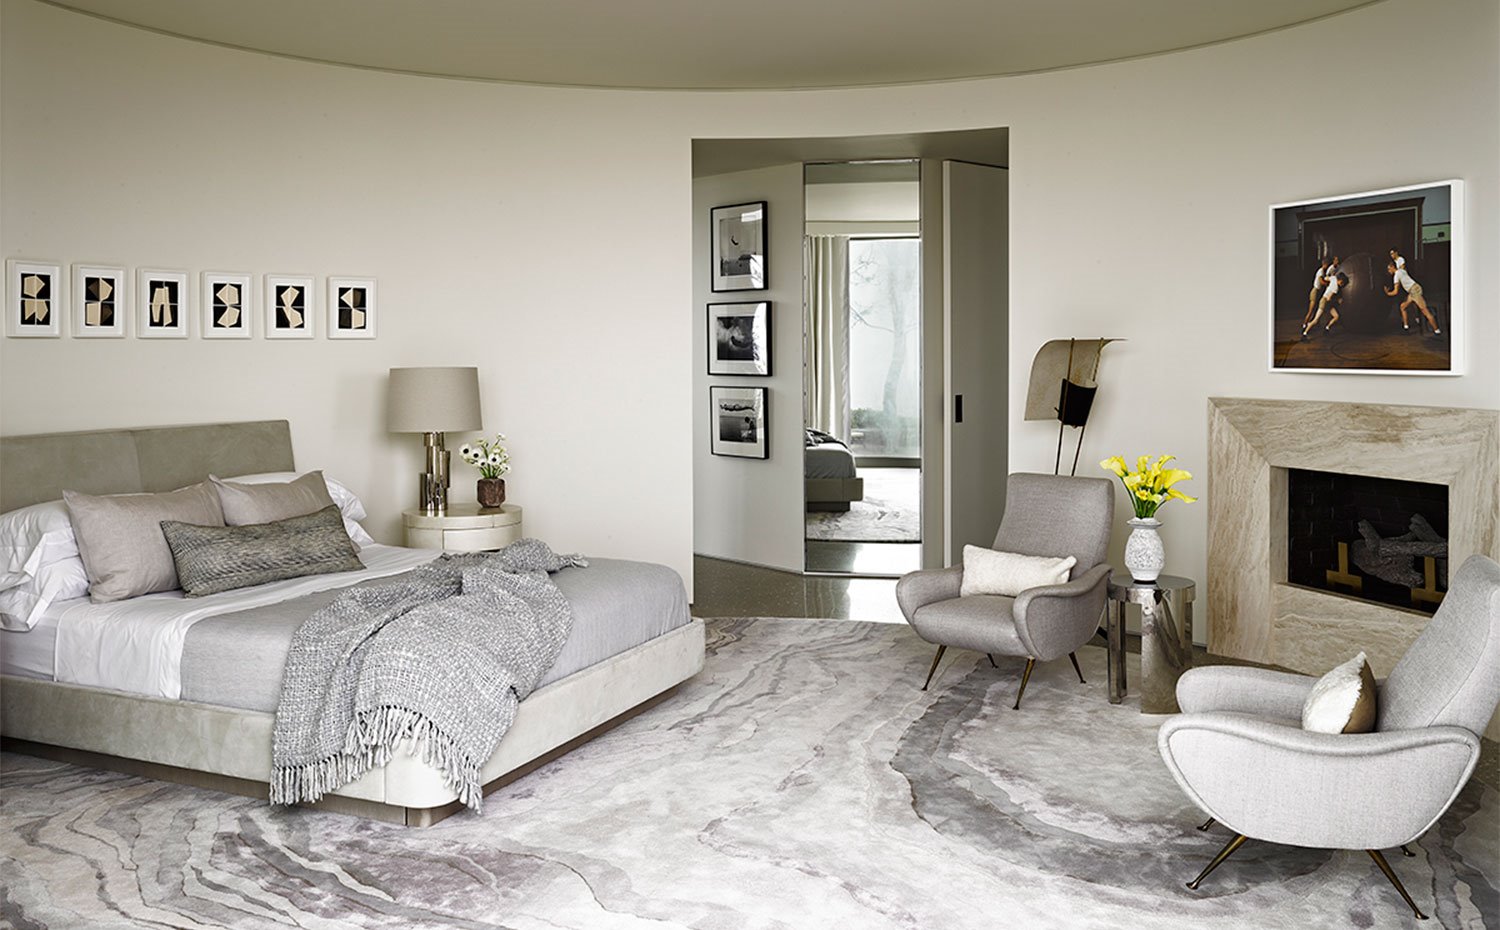 Dormitorio con alfombra de gran tamaño en tonos grisáceos, butacas grises, chimenea revestida de mármol y cama tapizada en tejido con textura aterciopelada.